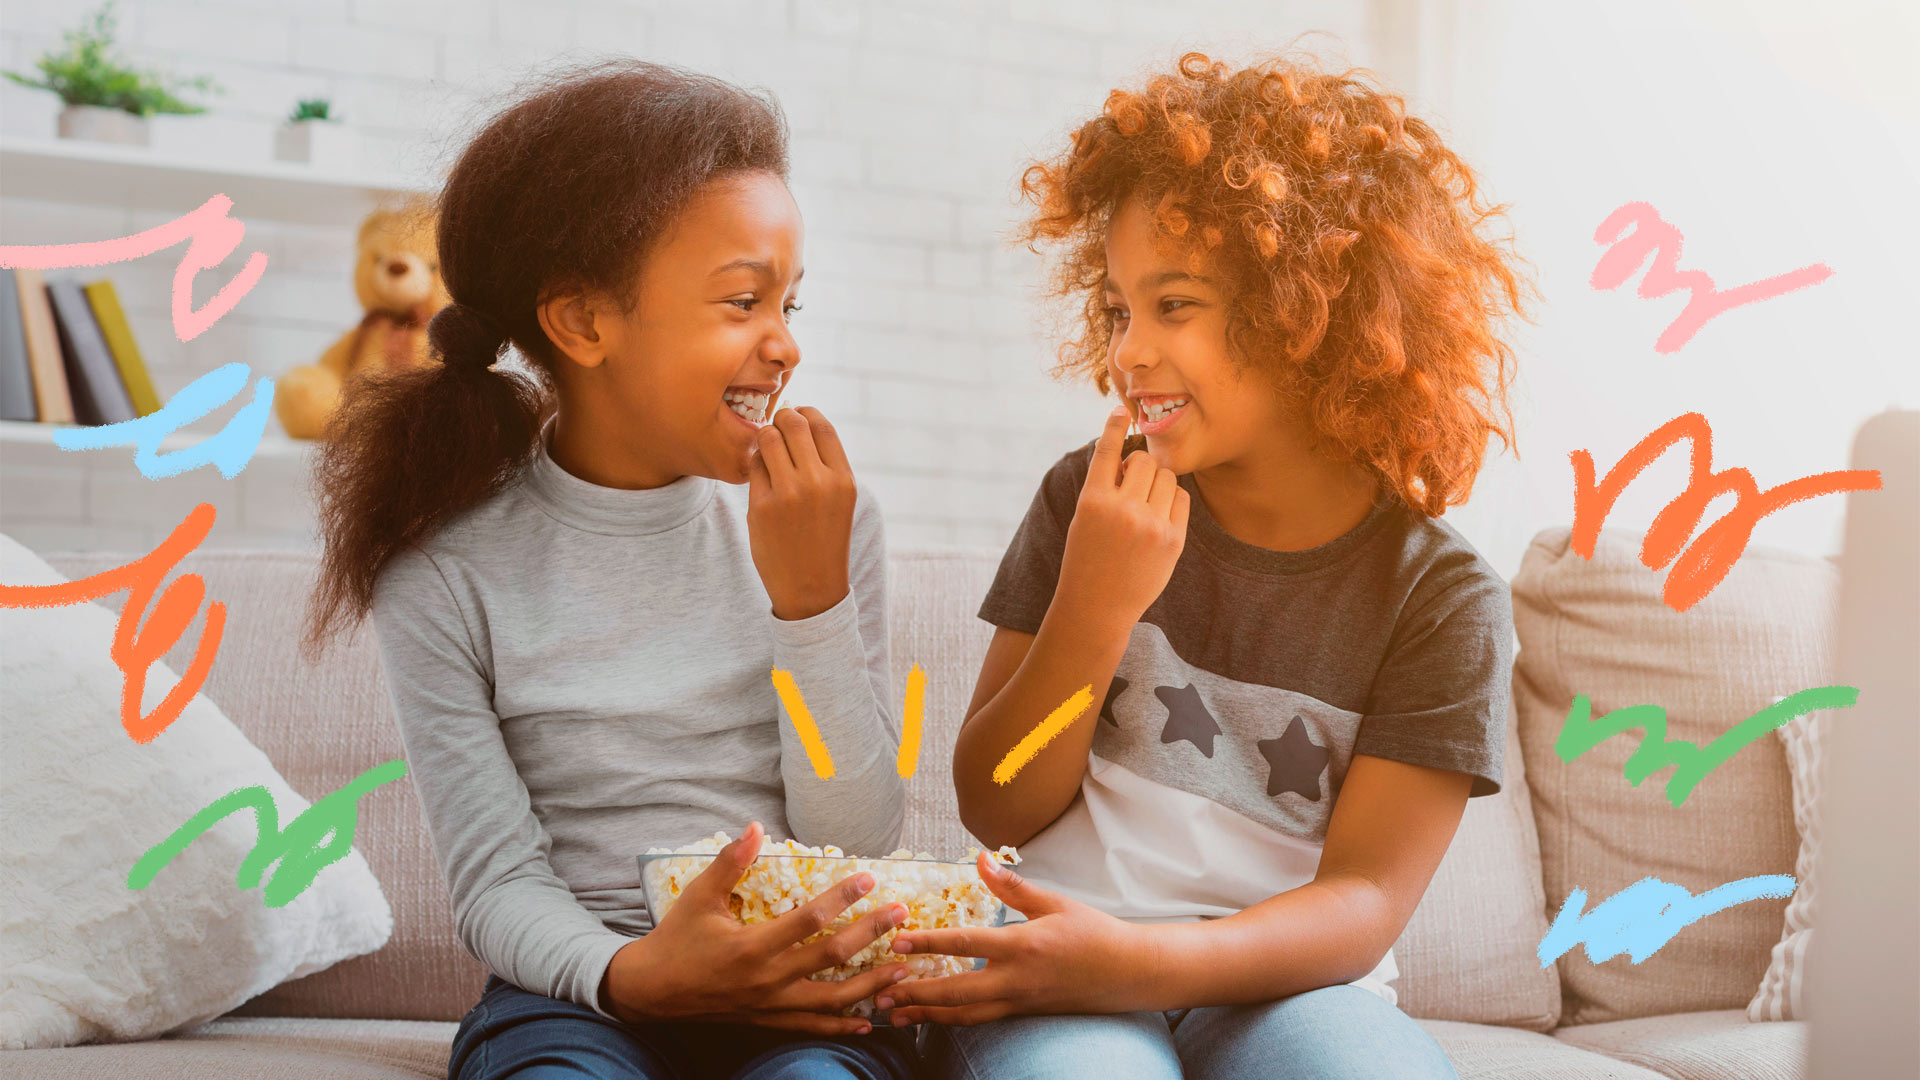 Na foto, duas meninas negras sorriem enquanto se olham e dividem uma pote com pipoca